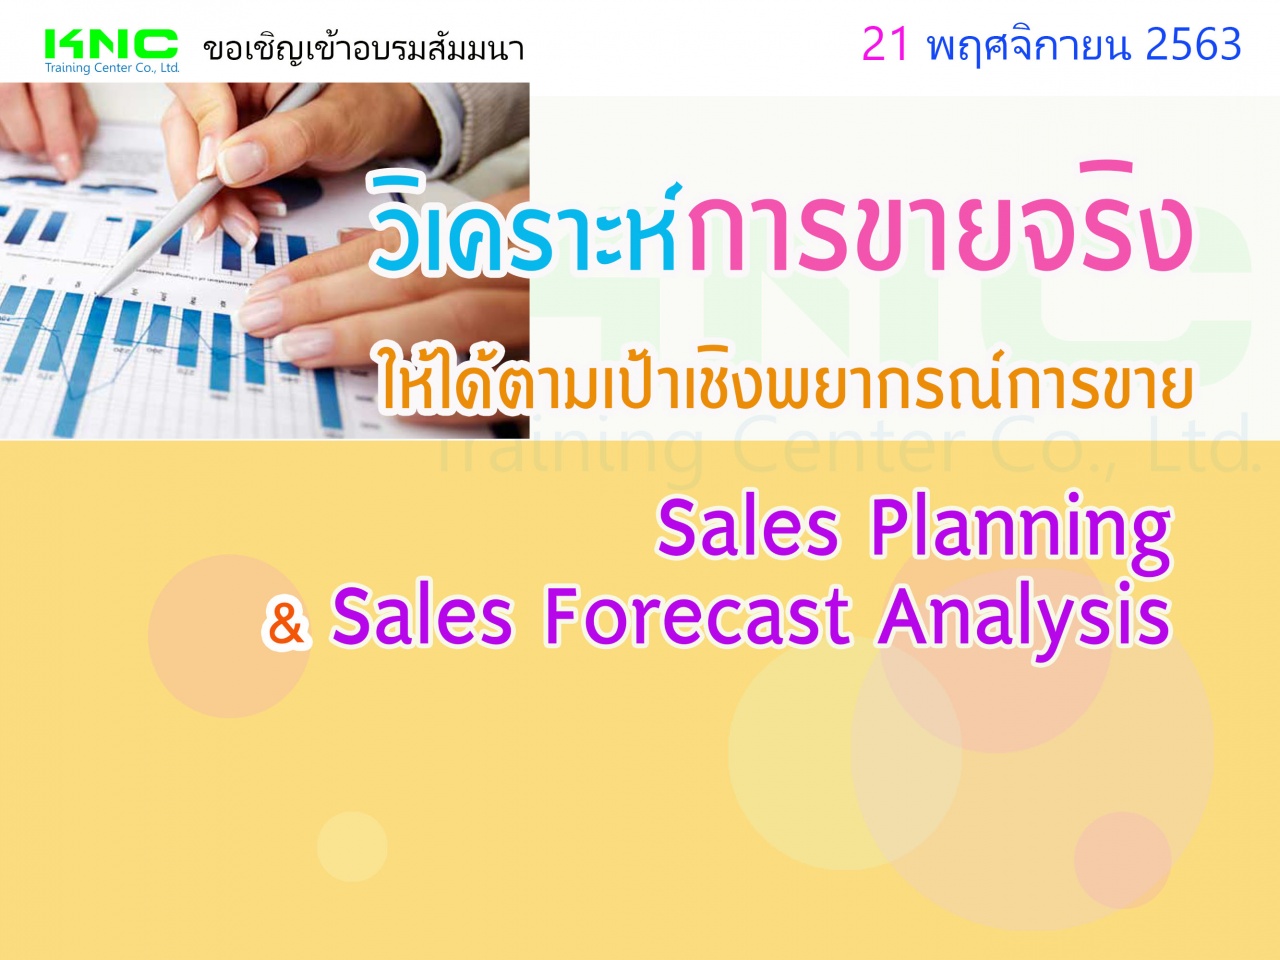 วิเคราะห์การขายจริงให้ได้ตามเป้าเชิงพยากรณ์การขาย (Sales Planning & Sales Forecast Analysis)